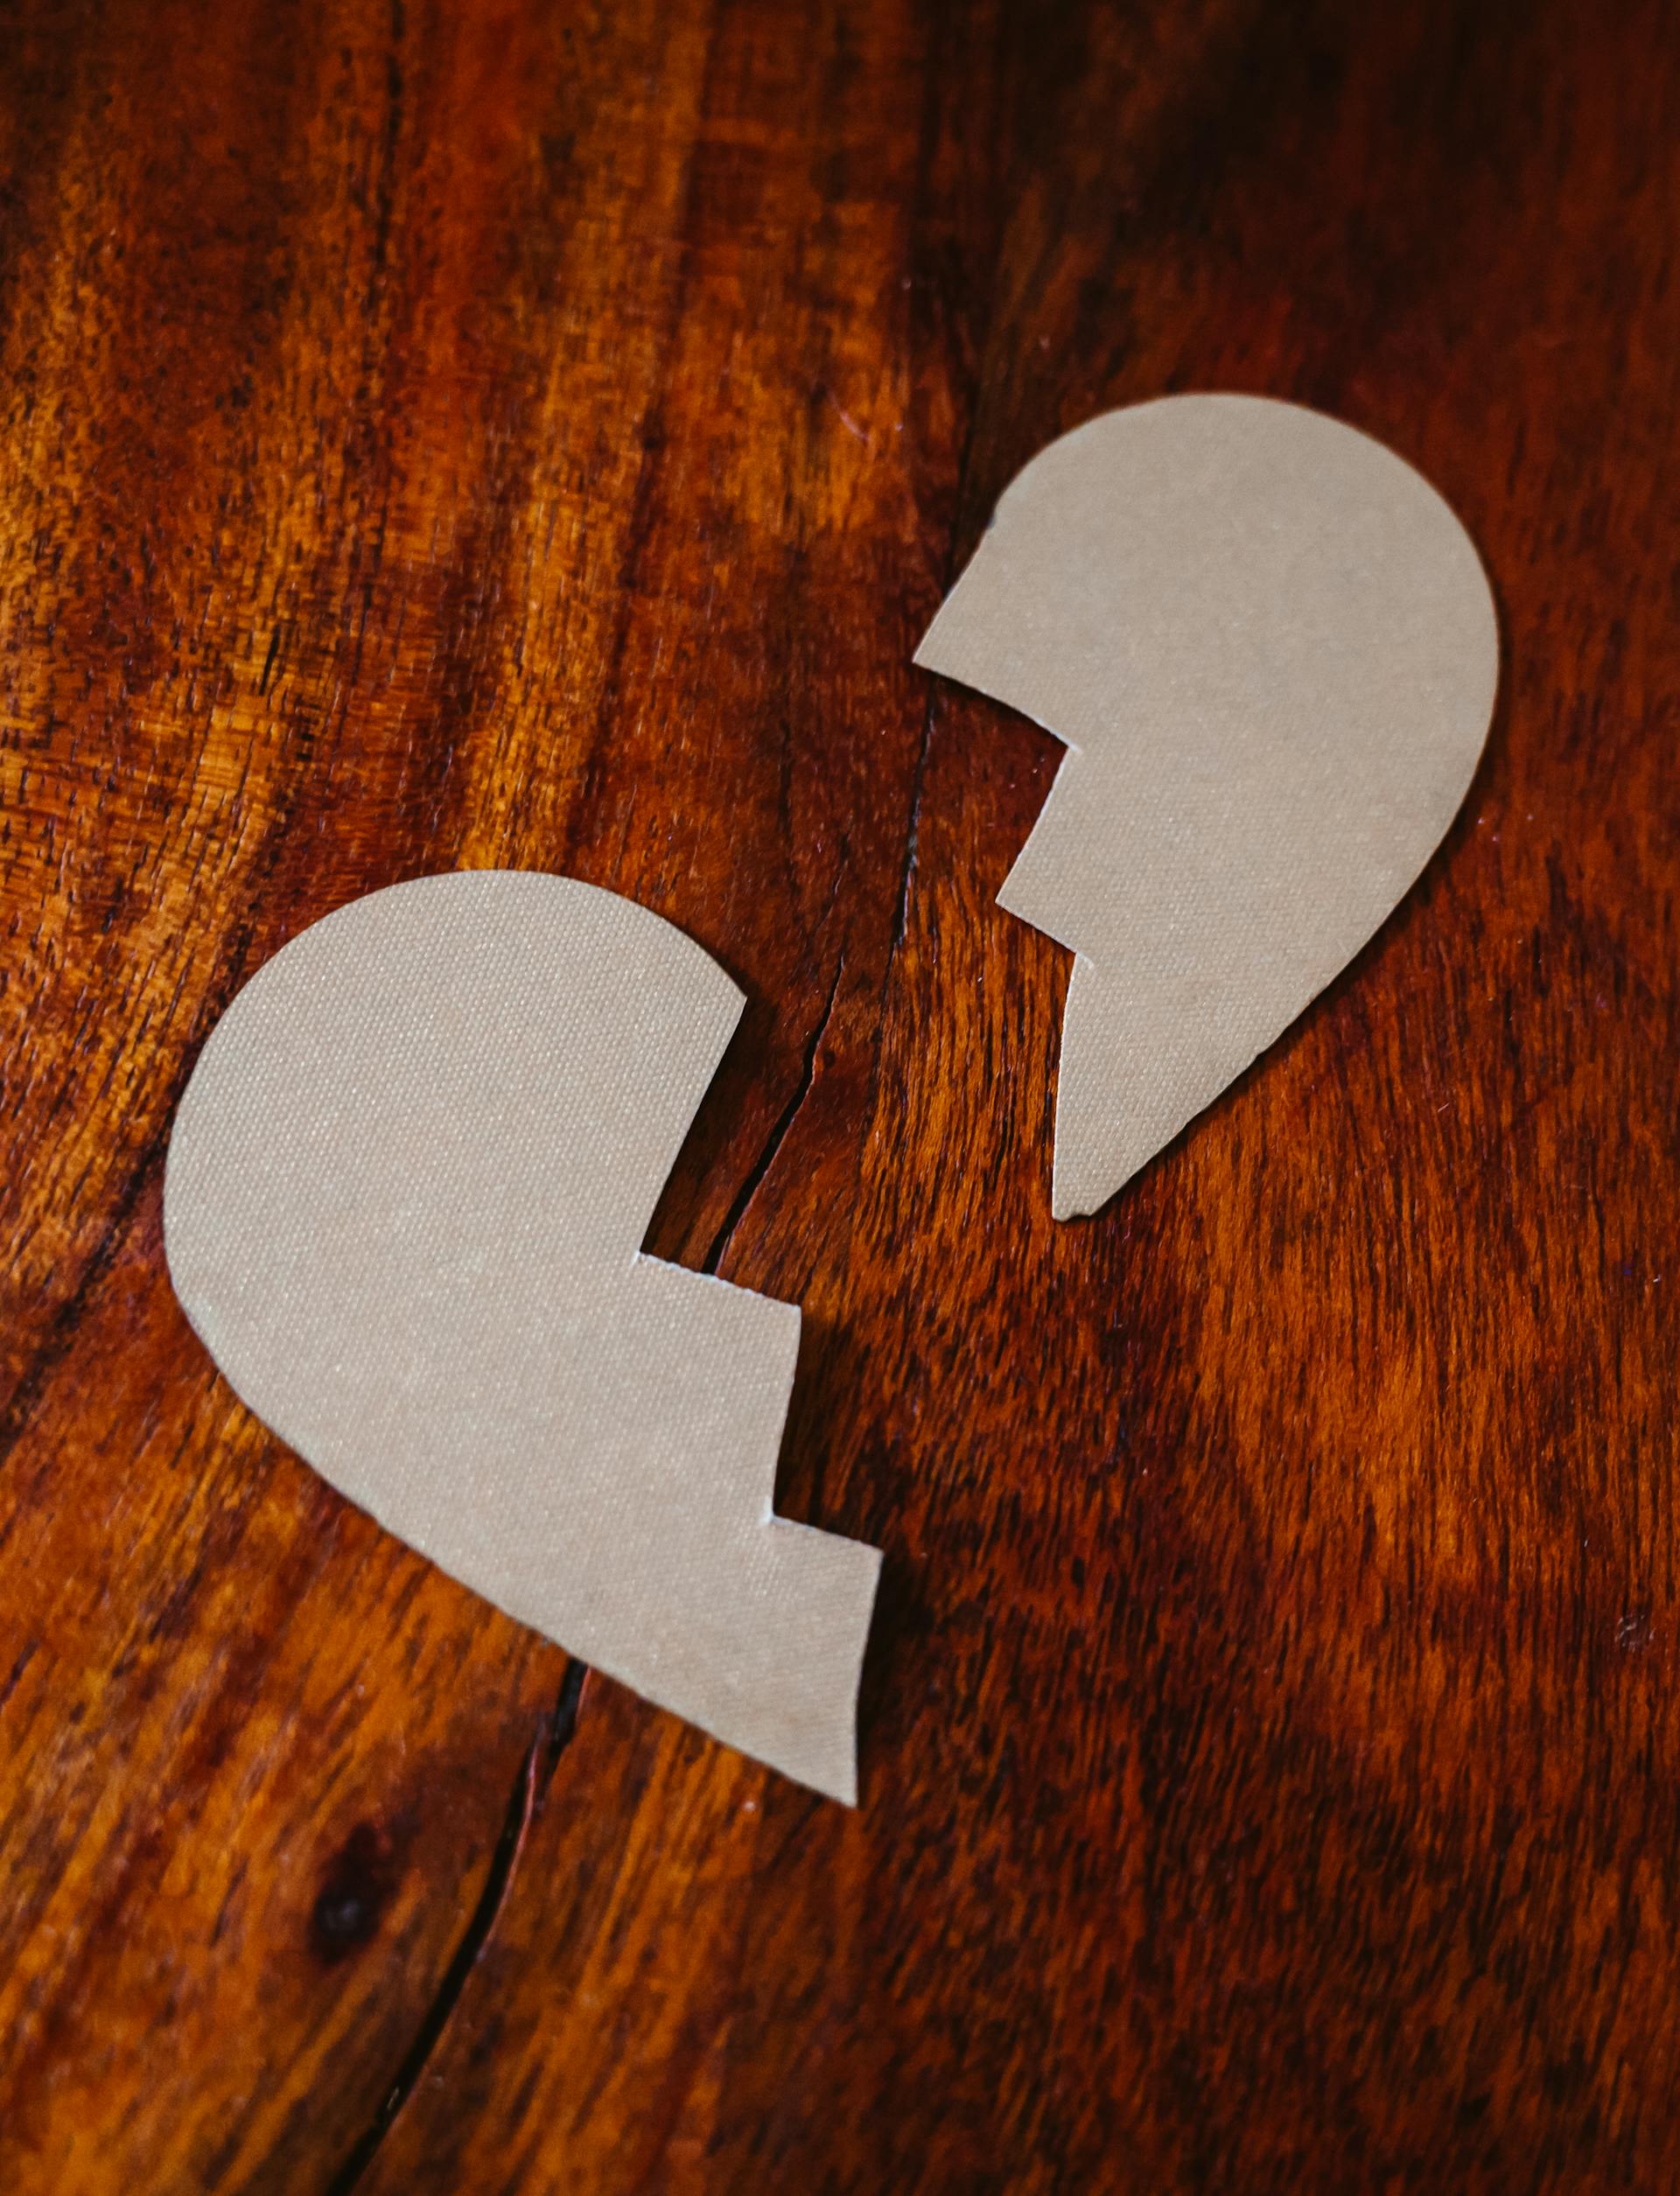 Un carton de cœur brisé posé sur une table en bois | Source : Pexels